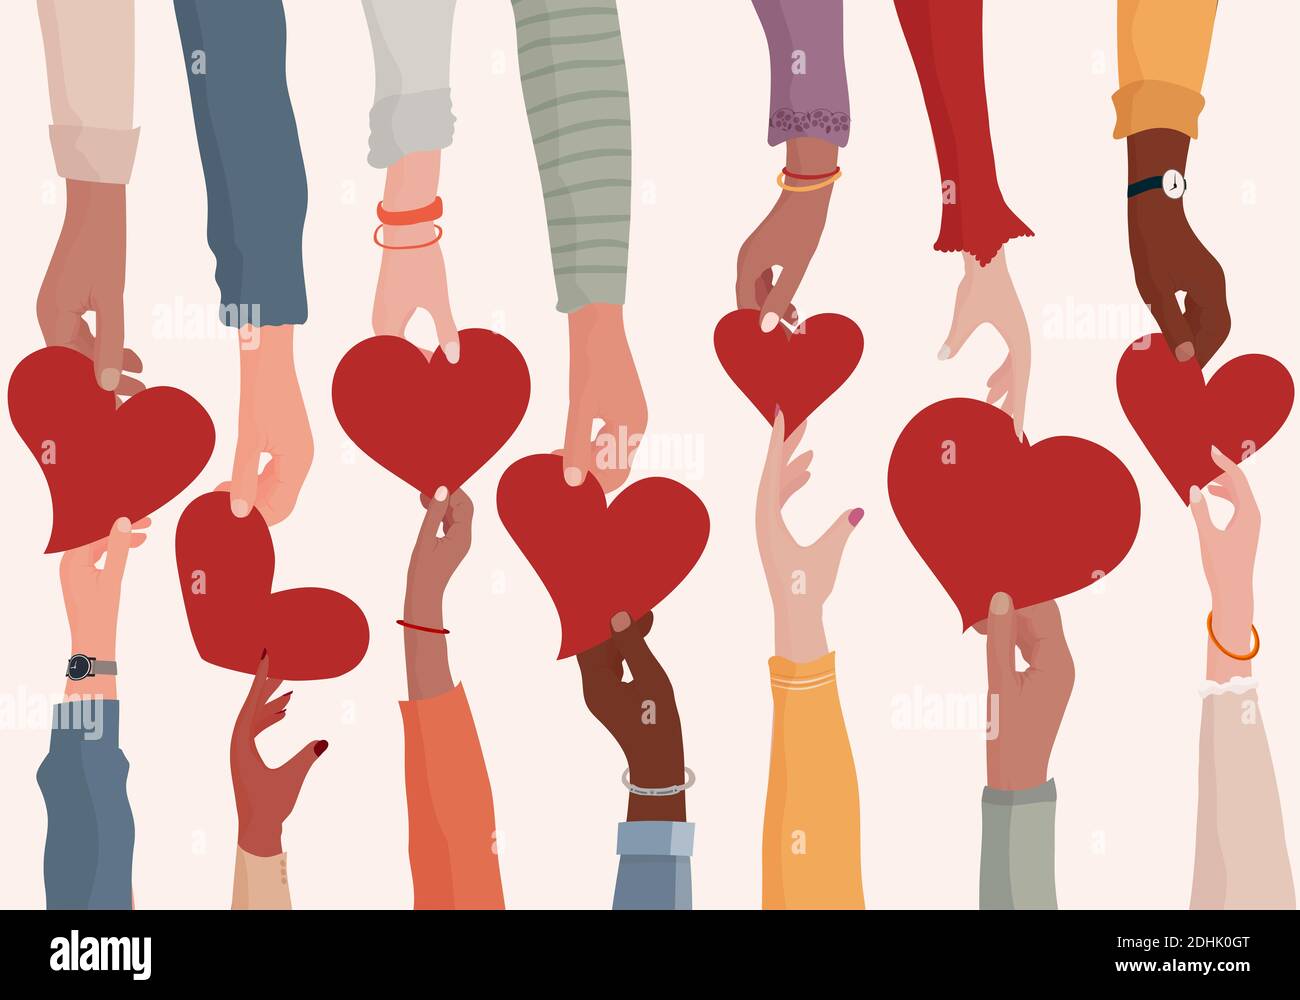 Konzept Charity Spende und Hilfe oder soziale Hilfe.Freiwillige Hände, die spenden Sie ein Herz an andere Hände als Metapher für Wohltätigkeitsorganisationen und Spenden Stockfoto